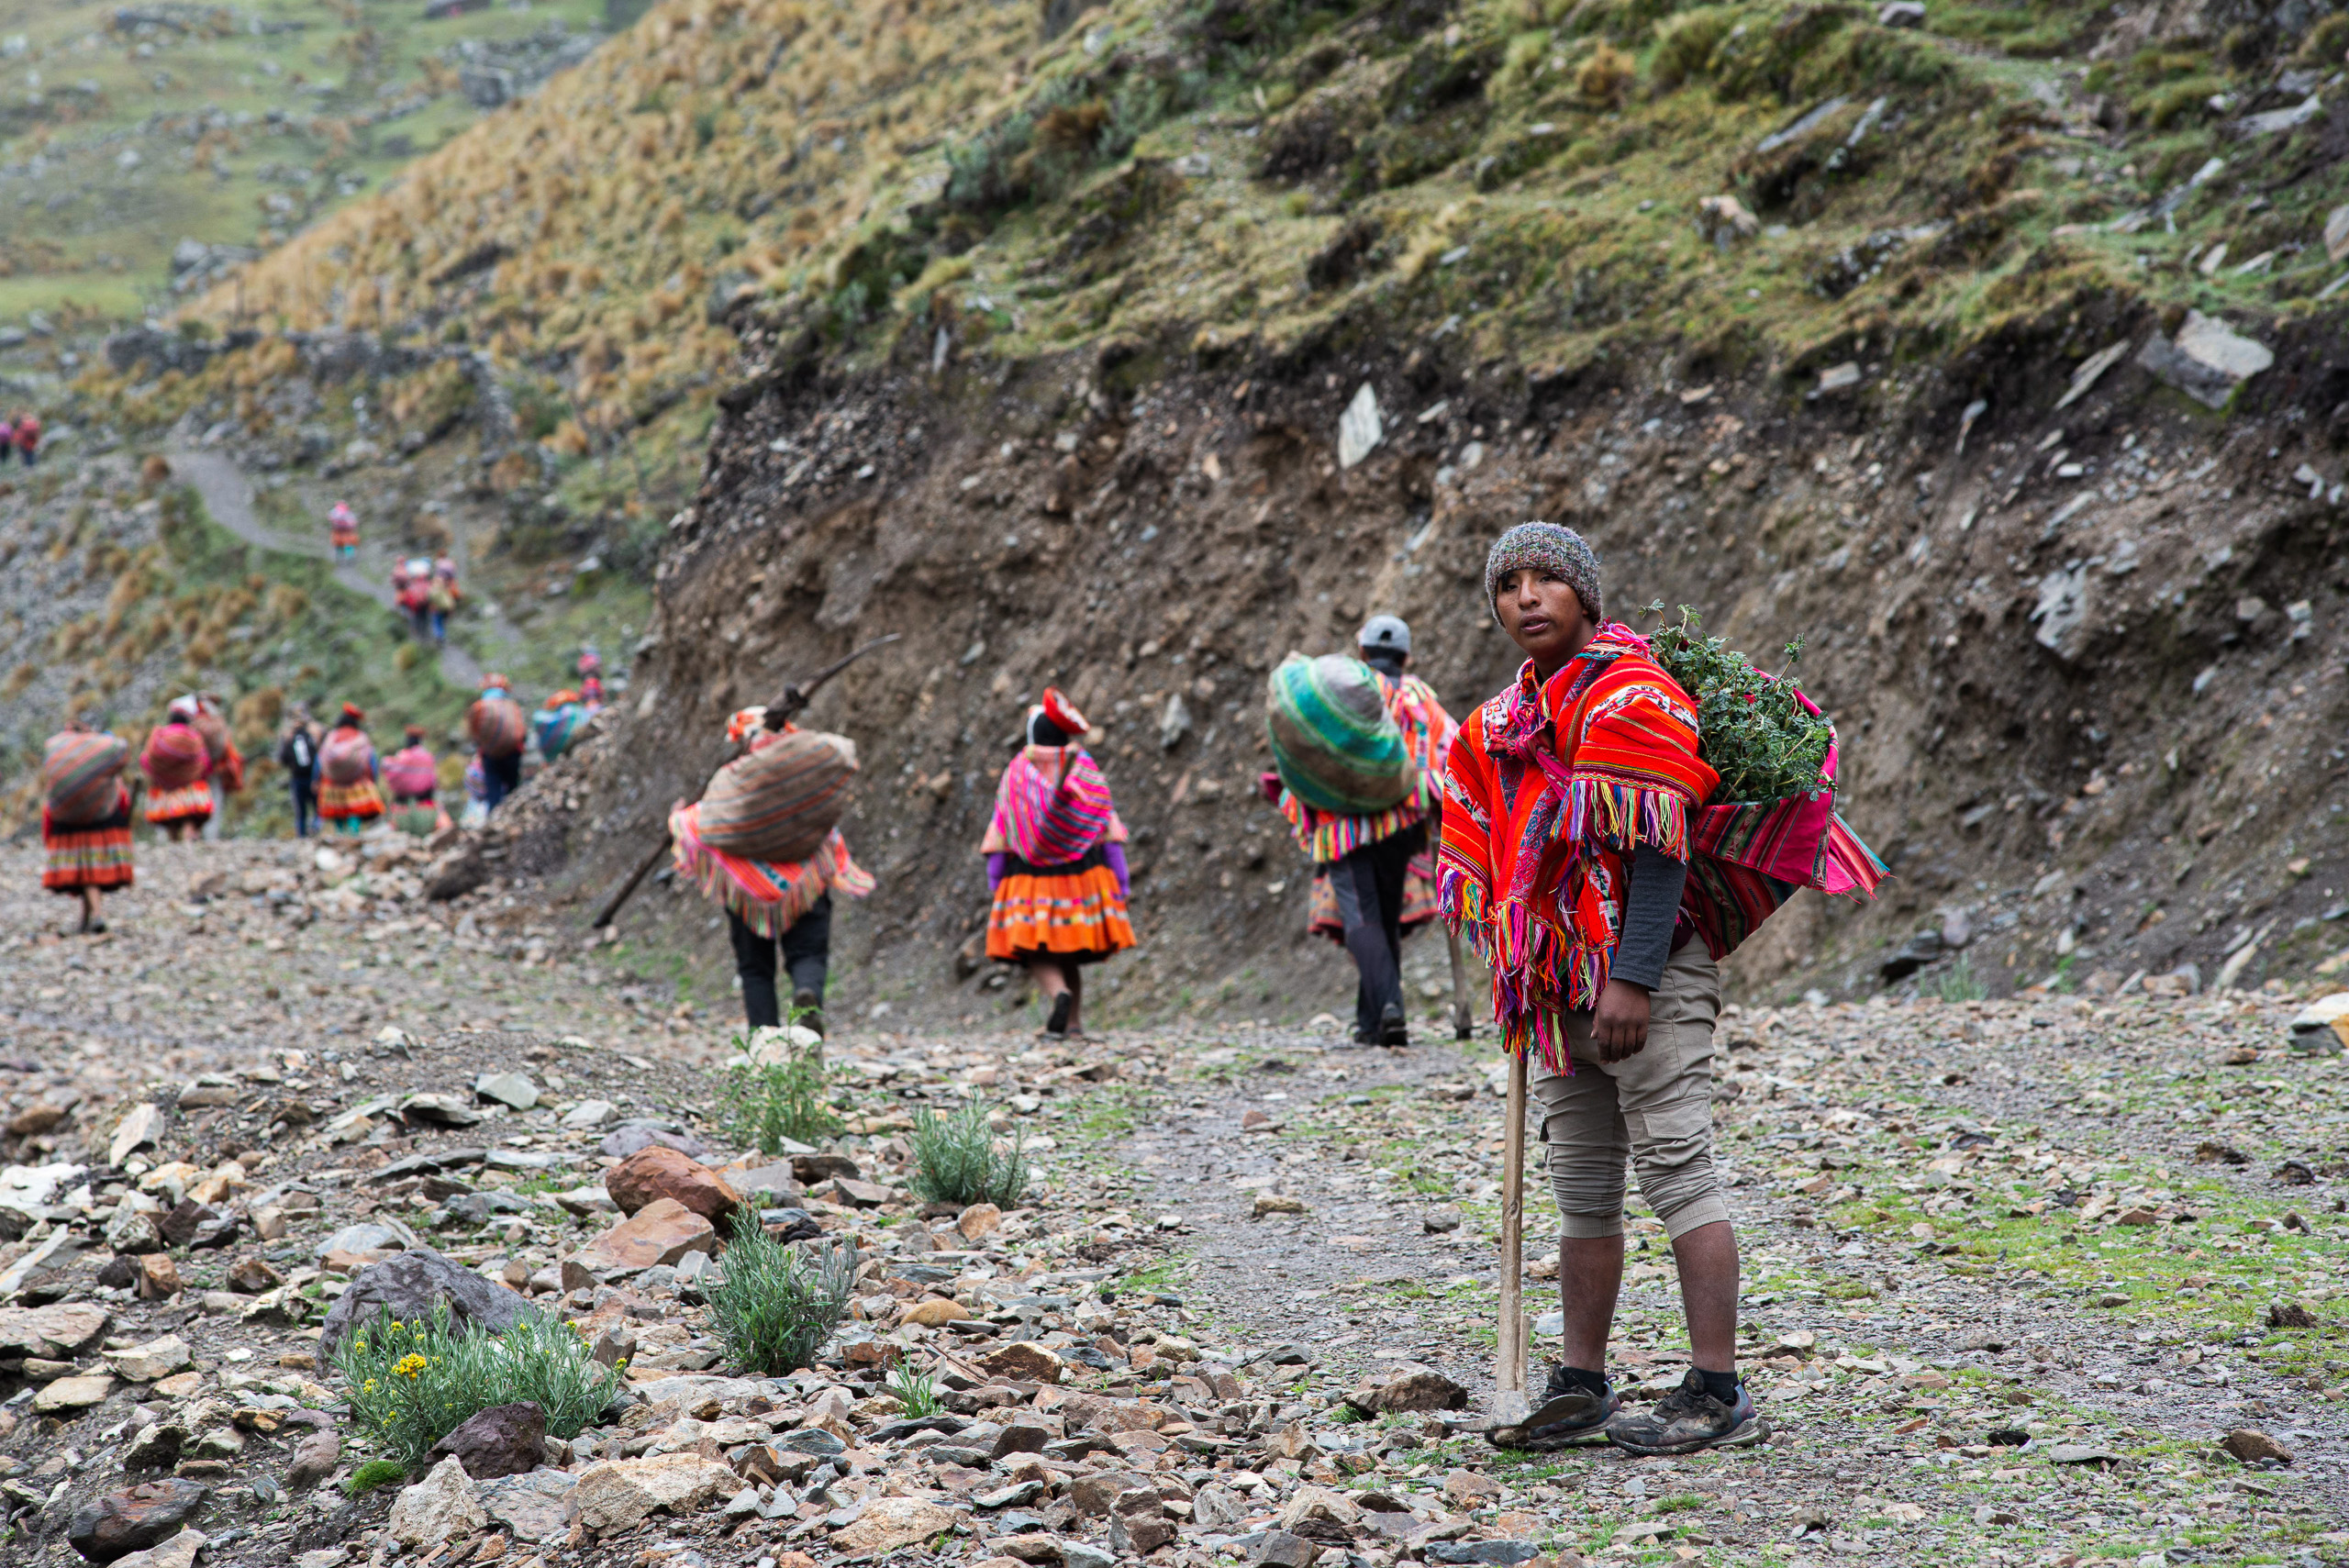 Un grupo de personas en la base de una zona montañosa, vestidas con ropa colorida